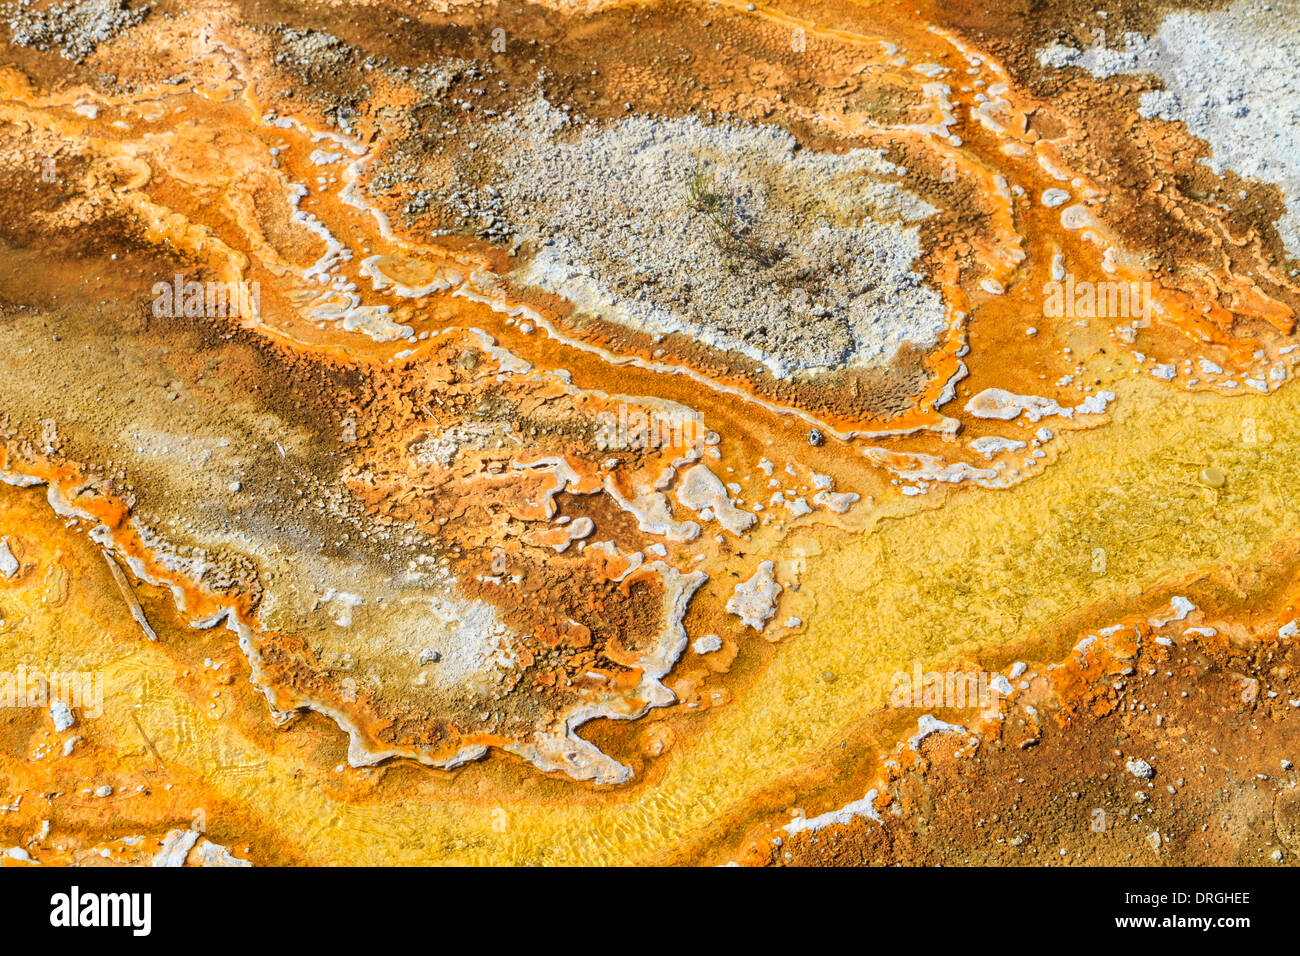 Tapetes microbianos en piscinas geotérmica, el Parque Nacional Yellowstone, Wyoming Foto de stock